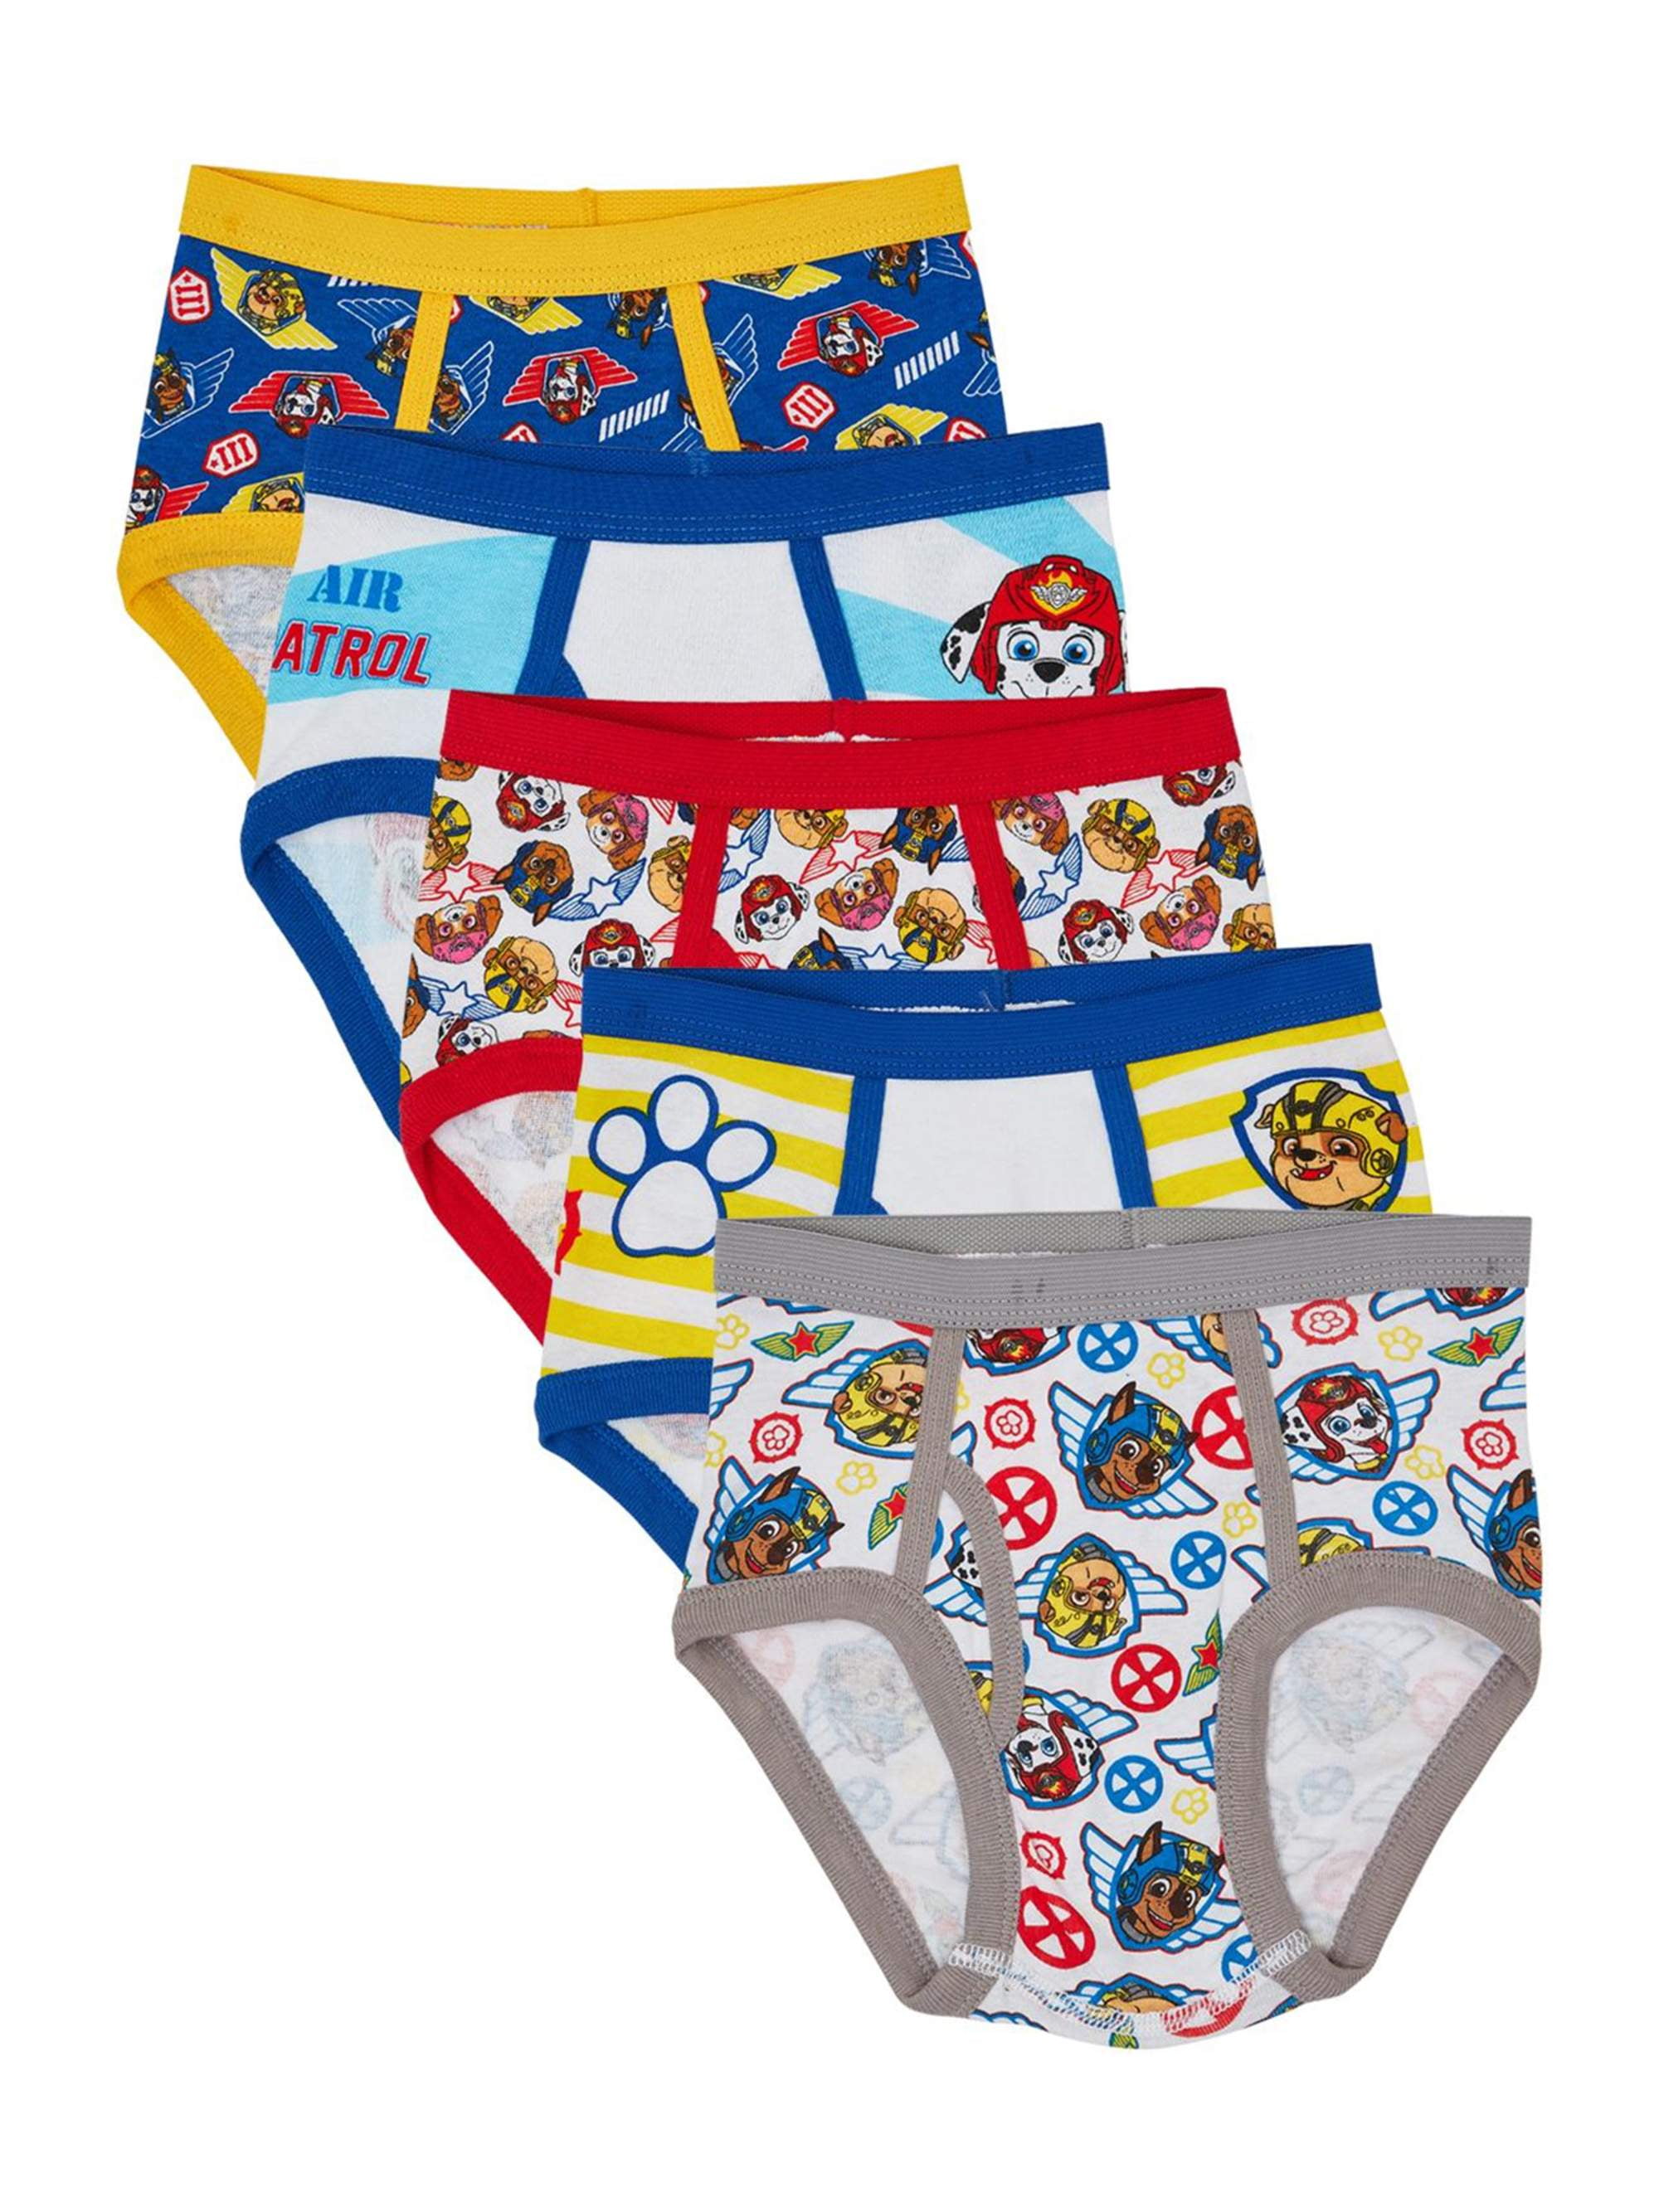 Nickelodeon PAW Patrol Boys Underwear Briefs, 5 Pack Sizes 4 - 6